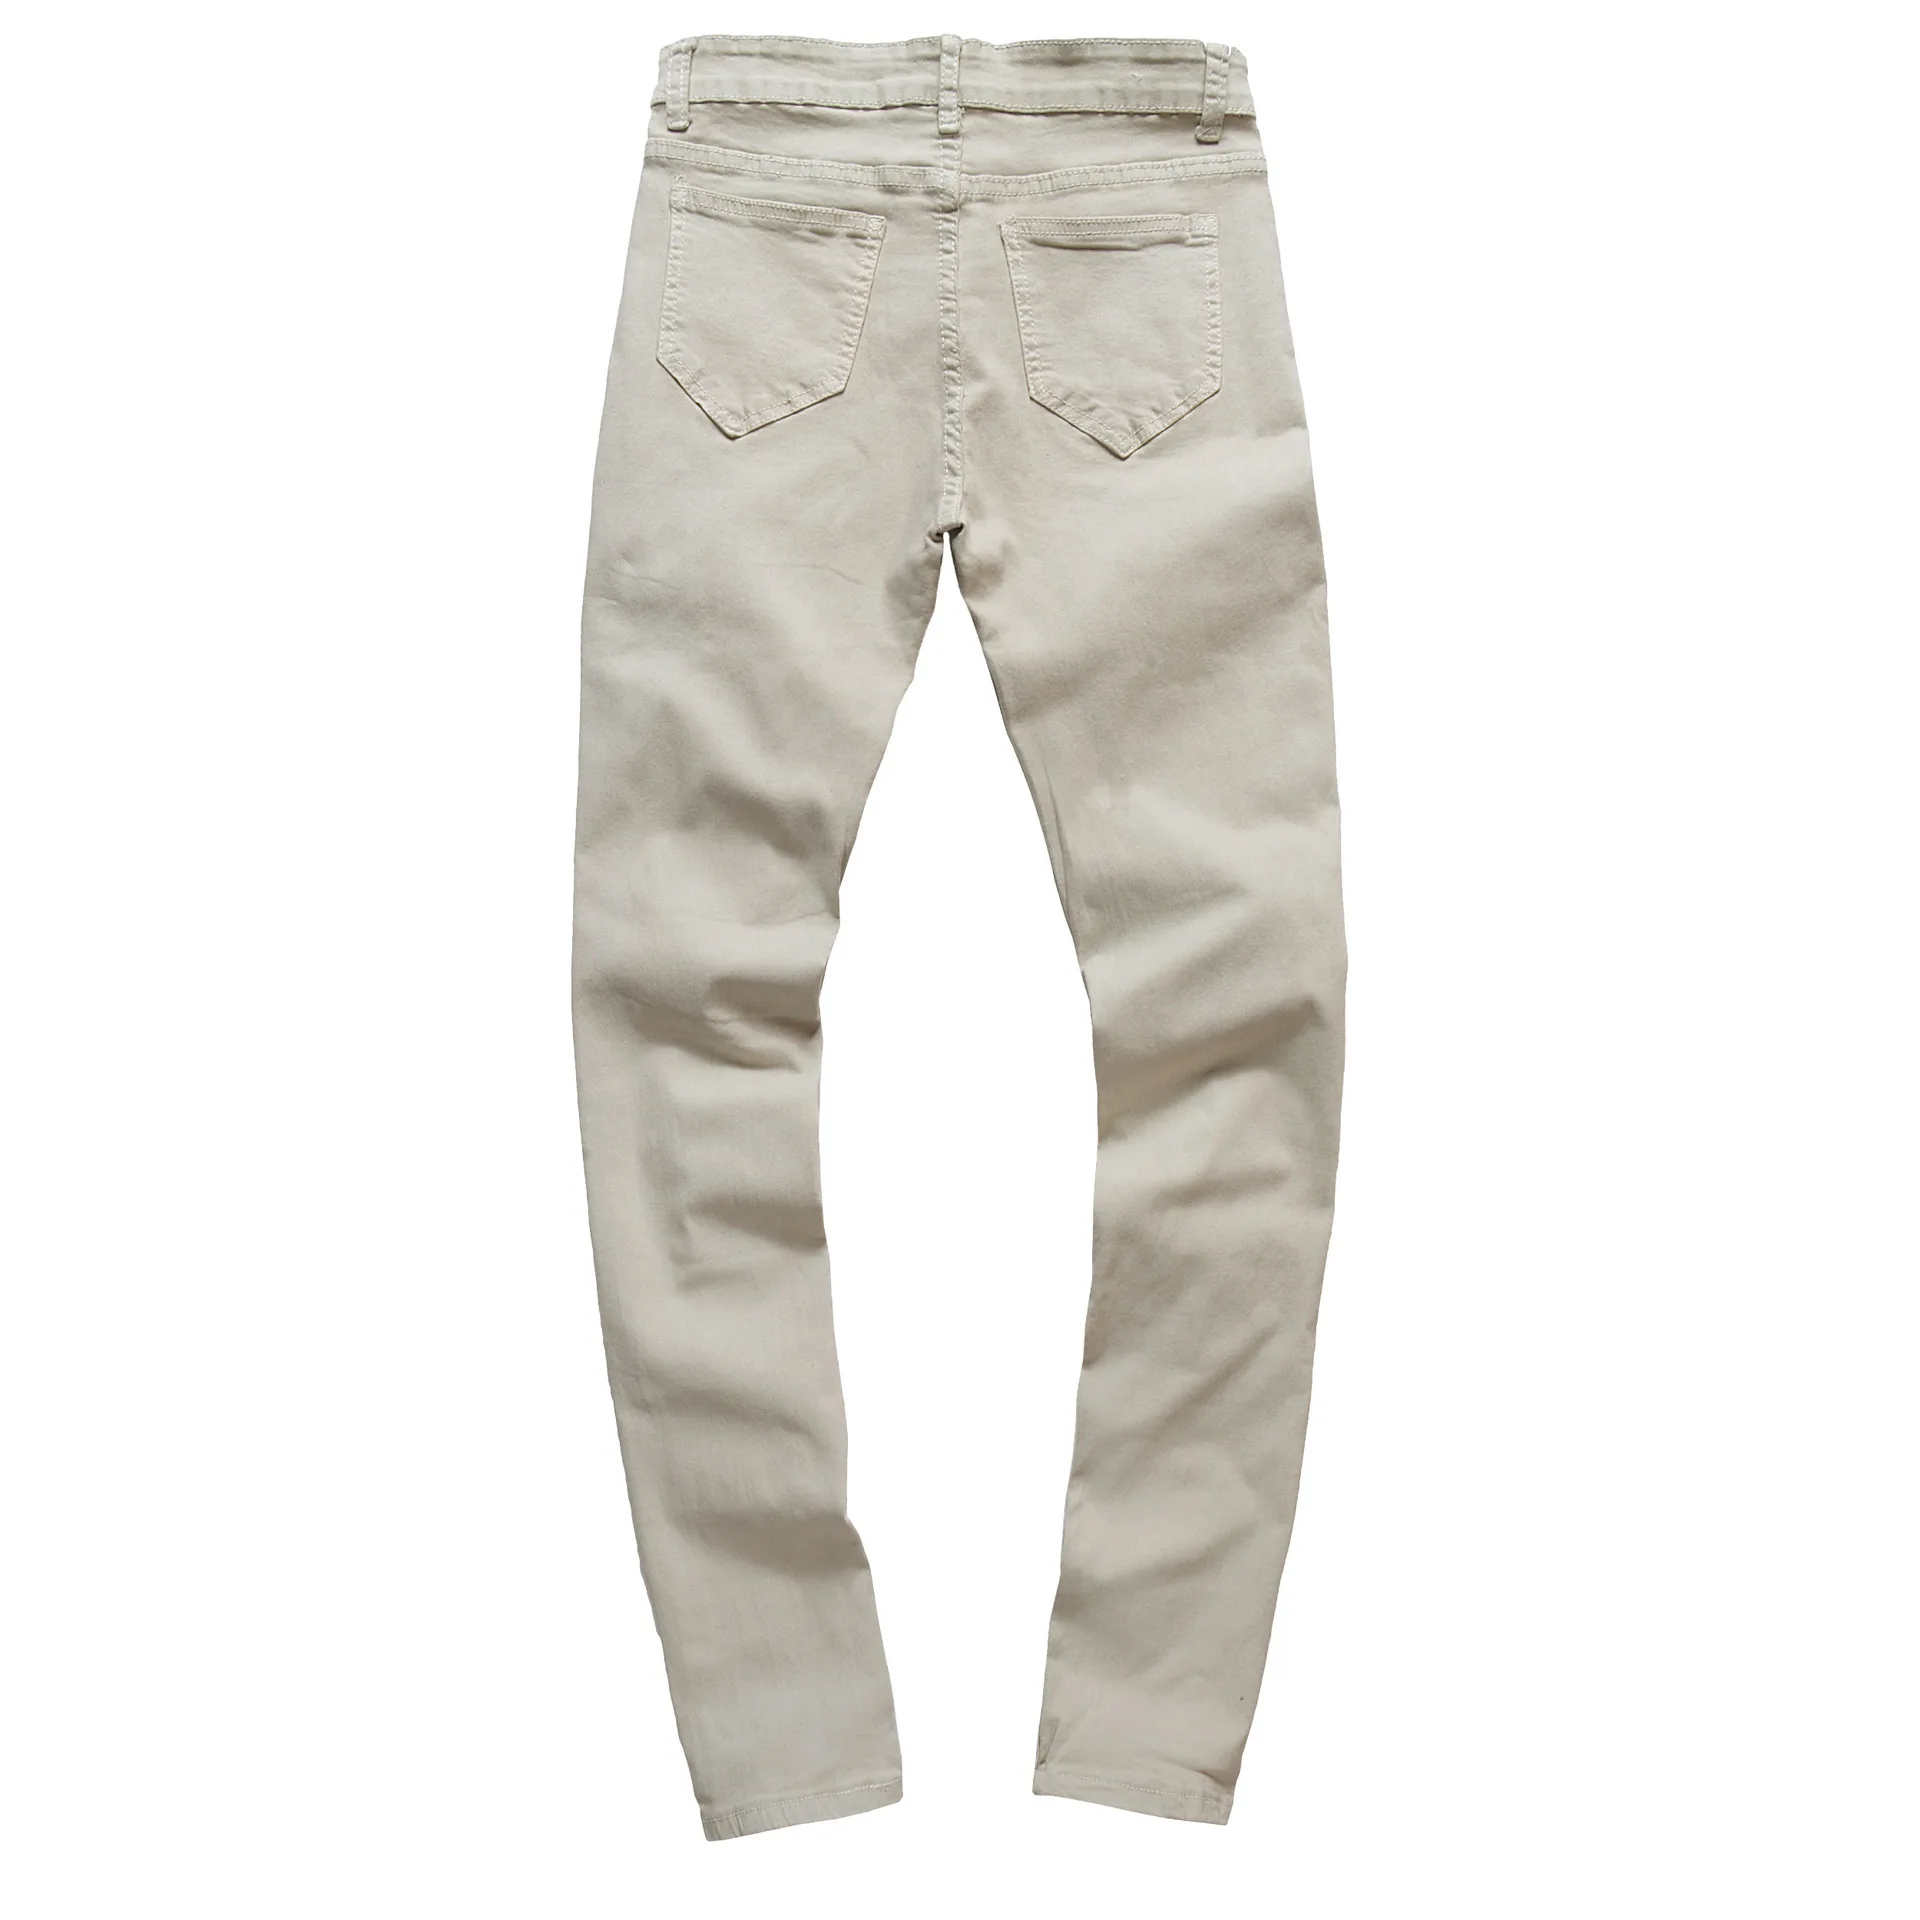 2019 новые весенне-летние мужские джинсы высокого качества, градиентные брендовые джинсы для мужчин, модные штаны с дырками, большие размеры